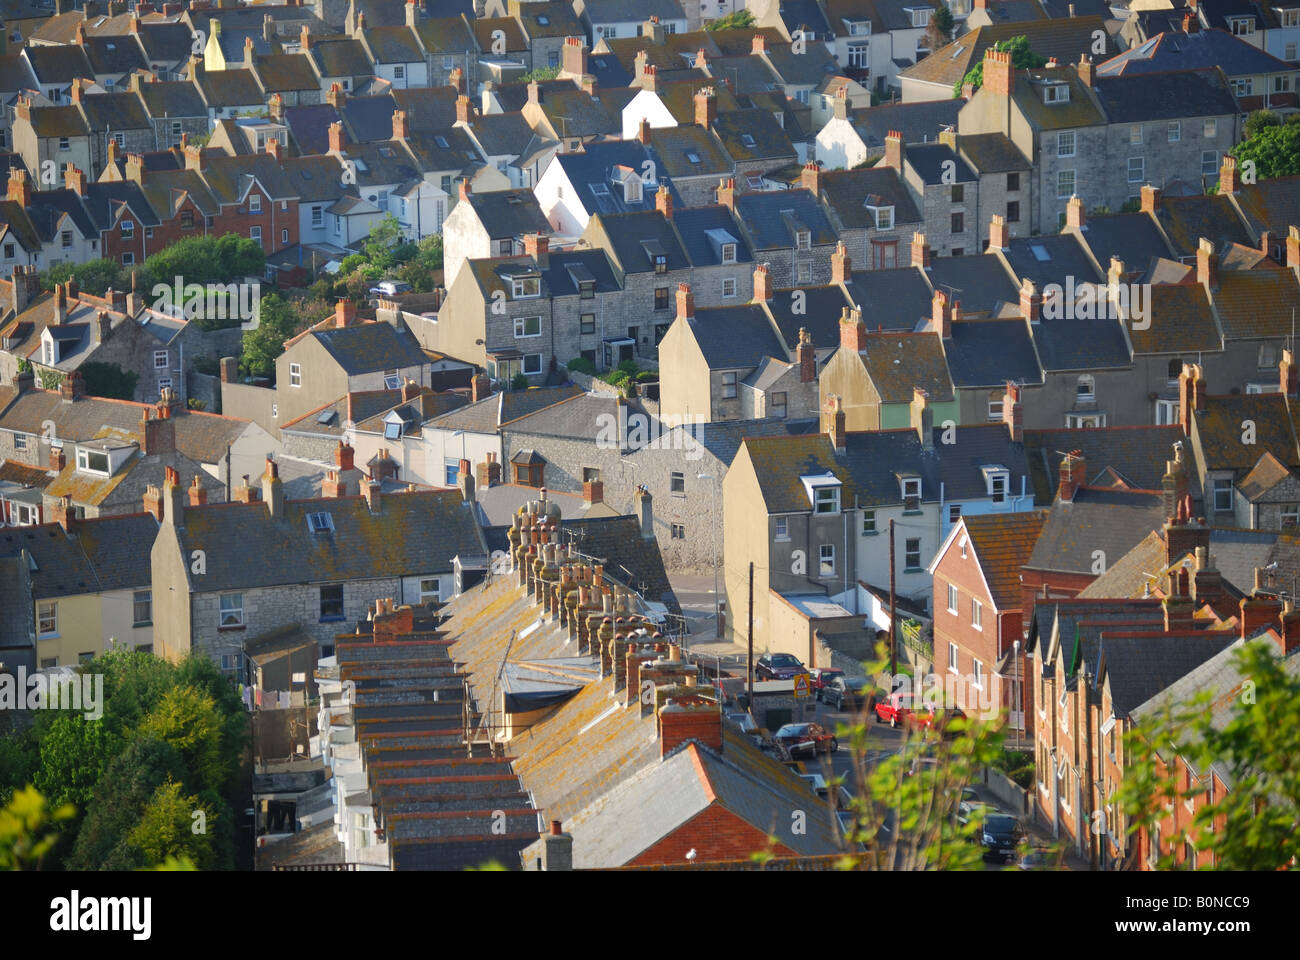 Vue aérienne du village, Fortuneswell, Île de Portland, Dorset, Angleterre, Royaume-Uni Banque D'Images